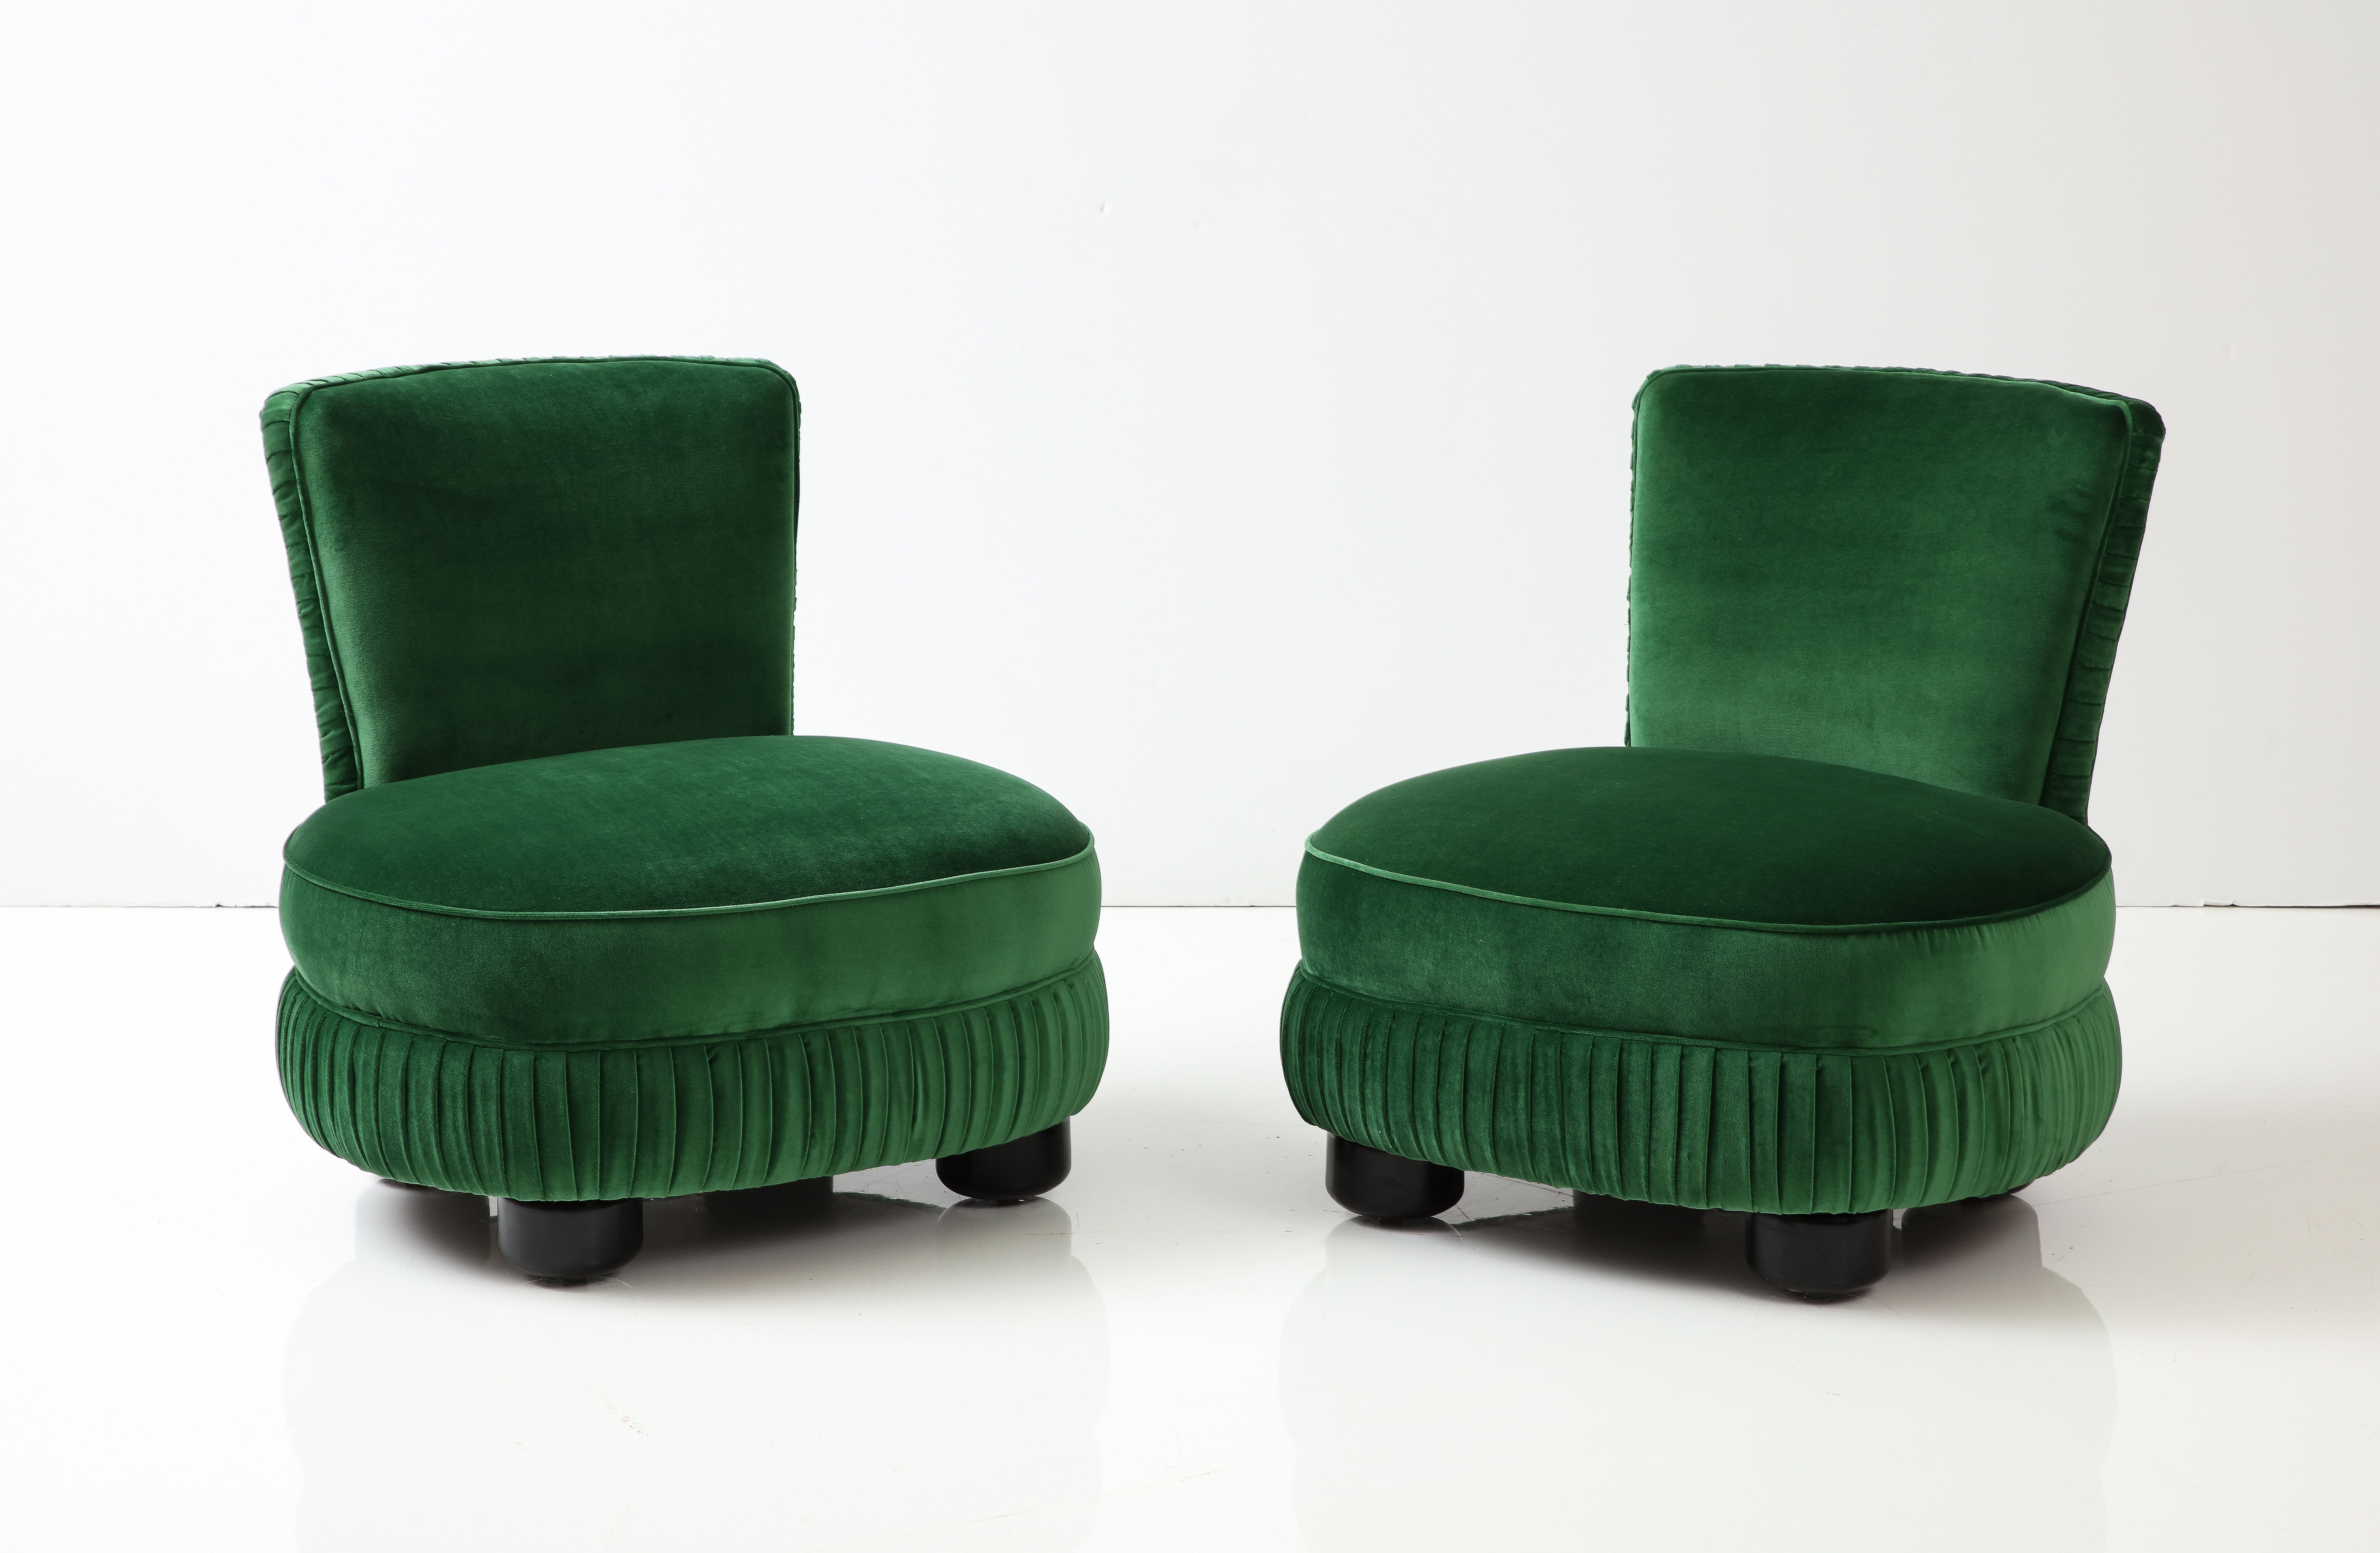 Étonnante paire de chaises pantoufles italiennes sculpturales, entièrement restaurées et tapissées à nouveau de velours vert, avec une usure et une patine mineures dues à l'âge et à l'utilisation.